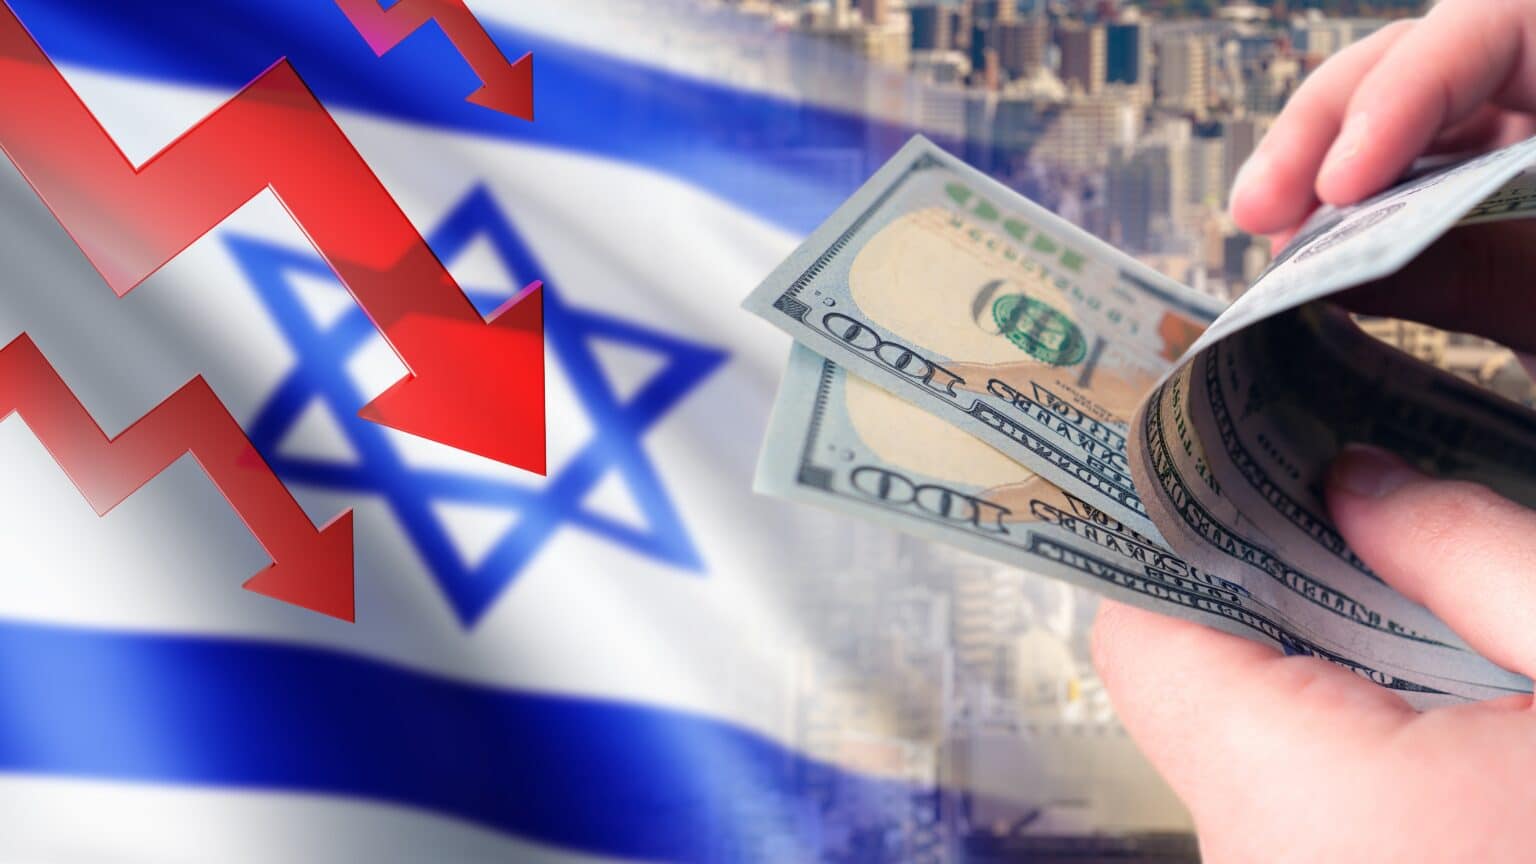 ראש אגף מאקרו בבנק ישראל: “הגירעון צפוי לטפס ל-7%”